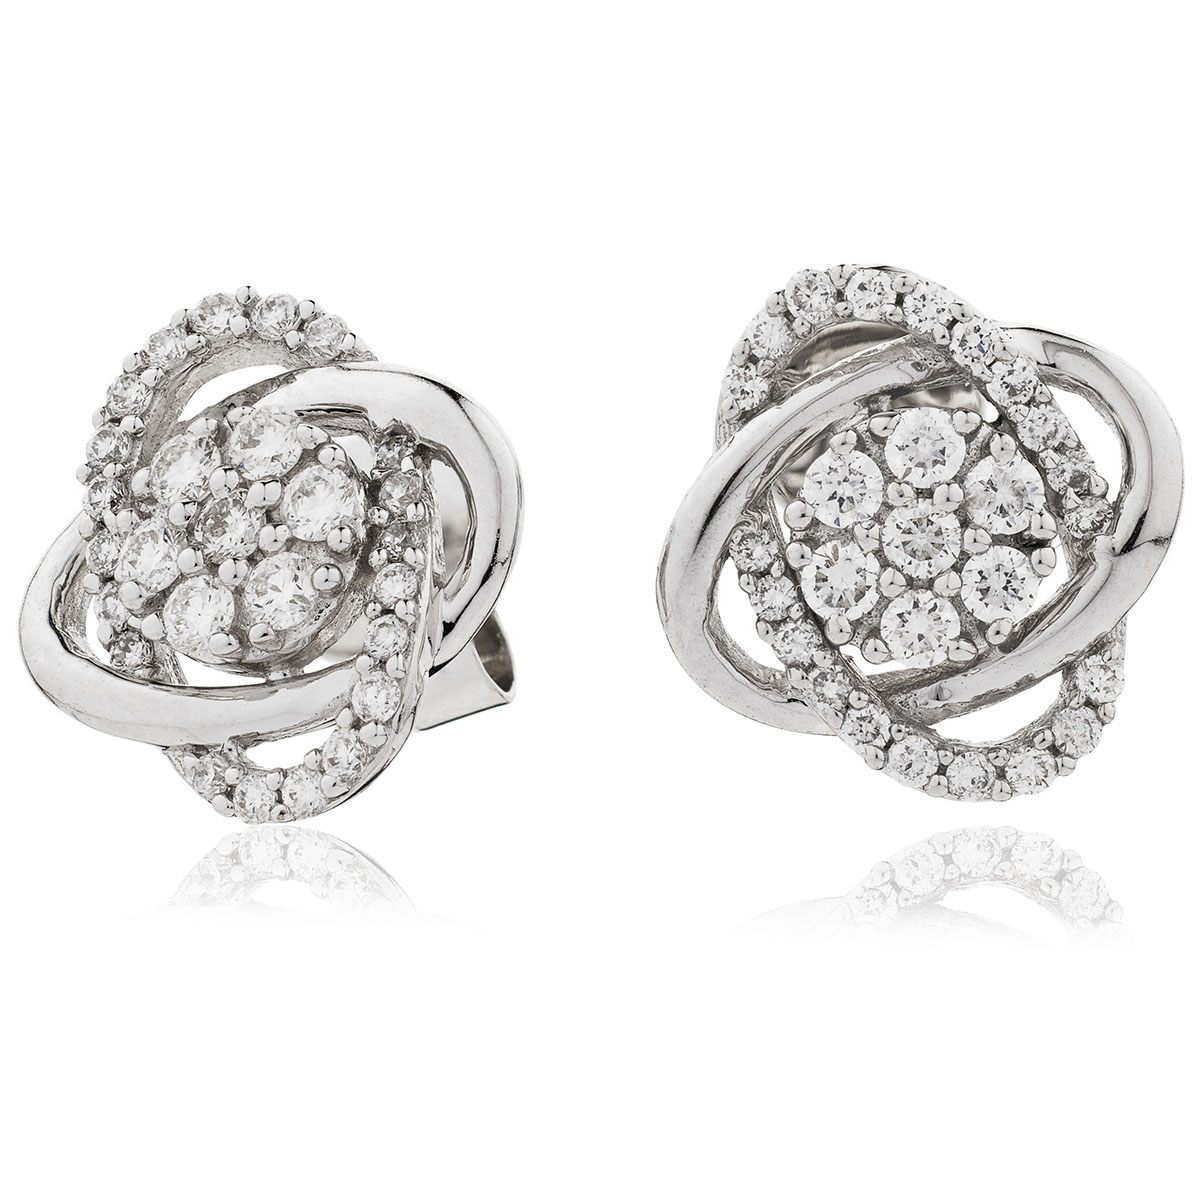 Swirl Cuts Diamond Earrings Studs